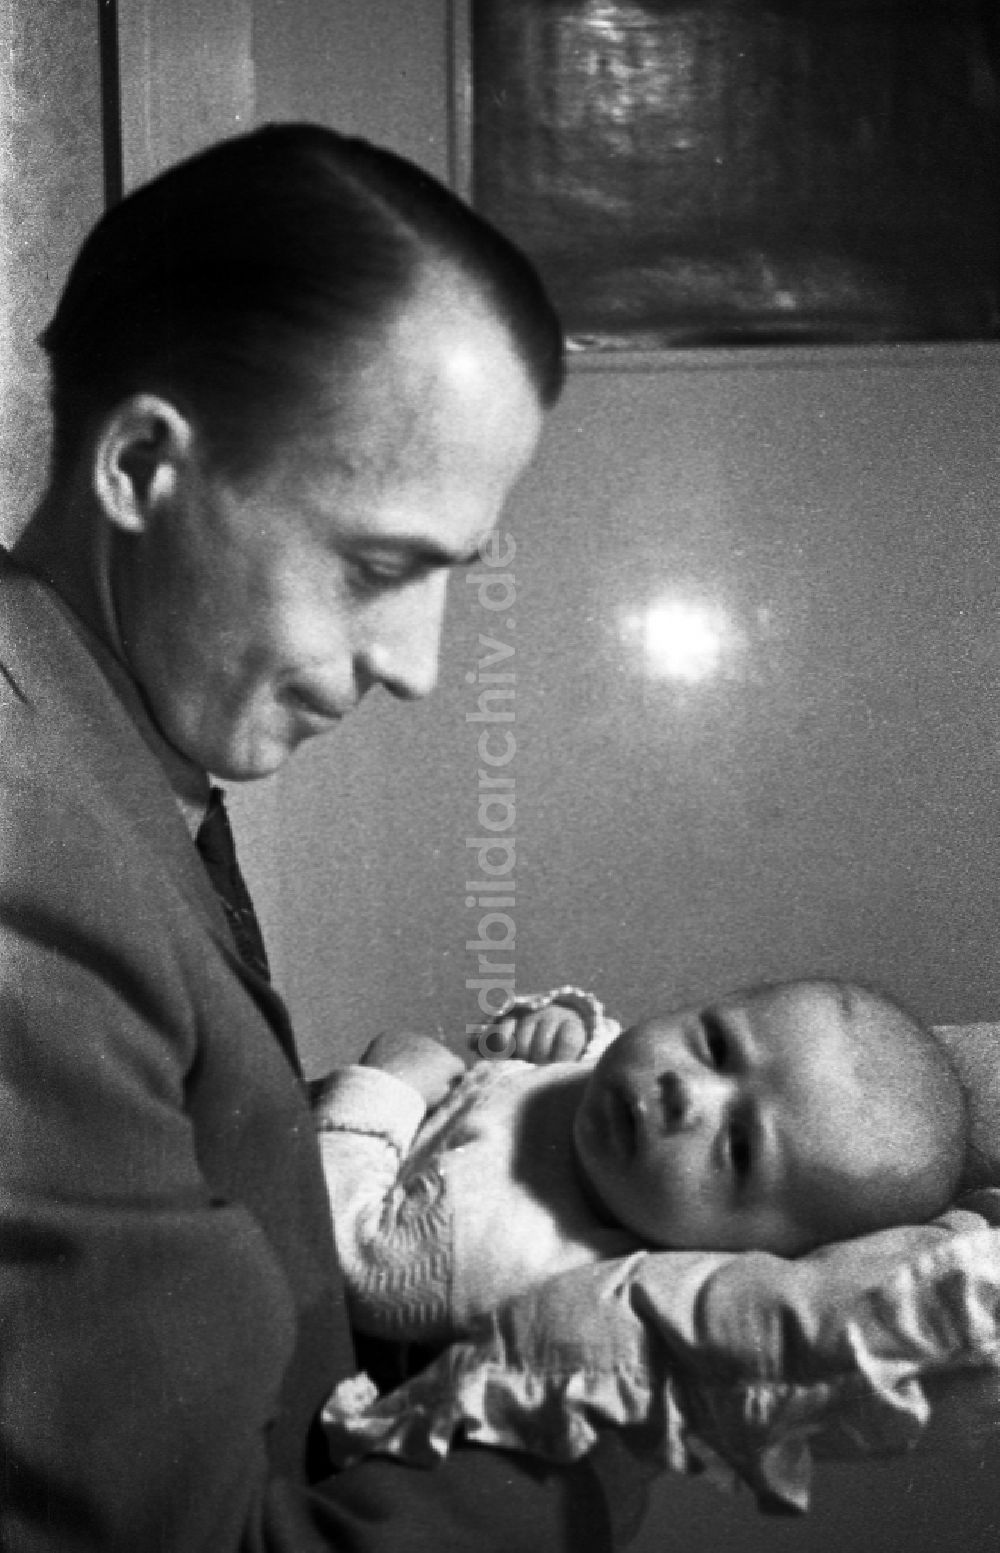 DDR-Fotoarchiv: Merseburg - Ein Vater hält stolz sein Baby auf dem Arm in Merseburg im Bundesland Sachsen-Anhalt auf dem Gebiet der ehemaligen DDR, Deutsche Demokratische Republik